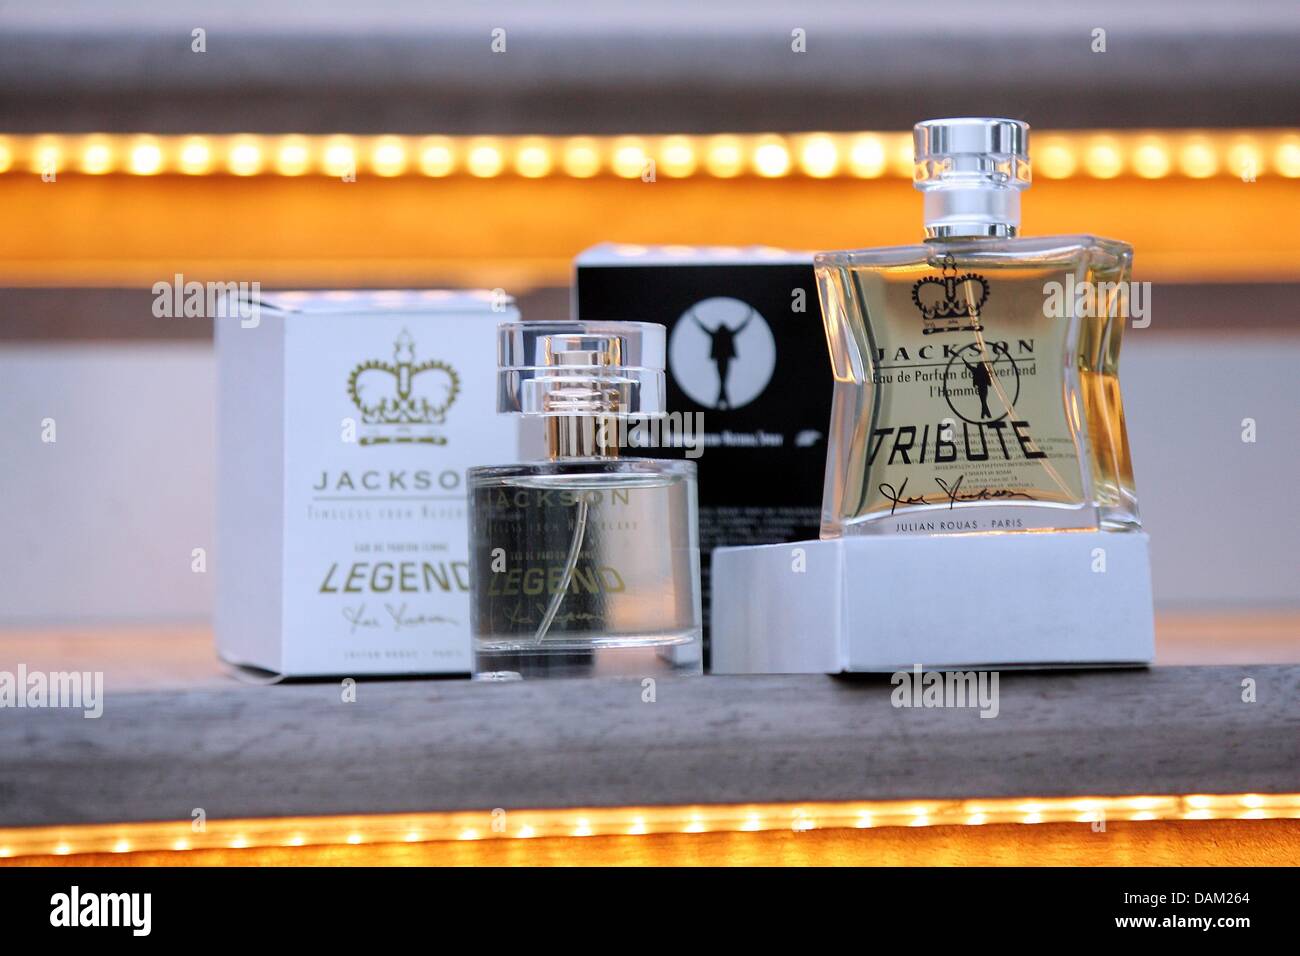 Parfüm-Flaschen eines Mannes Duft namens "Jacksons Tribute" und eine Frau Duft genannt "Jacksons Legend" von Michael Jacksons Vater, Joe Jackson, werden in Cannes, Frankreich, 17. Mai 2011 vorgestellt. Foto: Abj Stockfoto